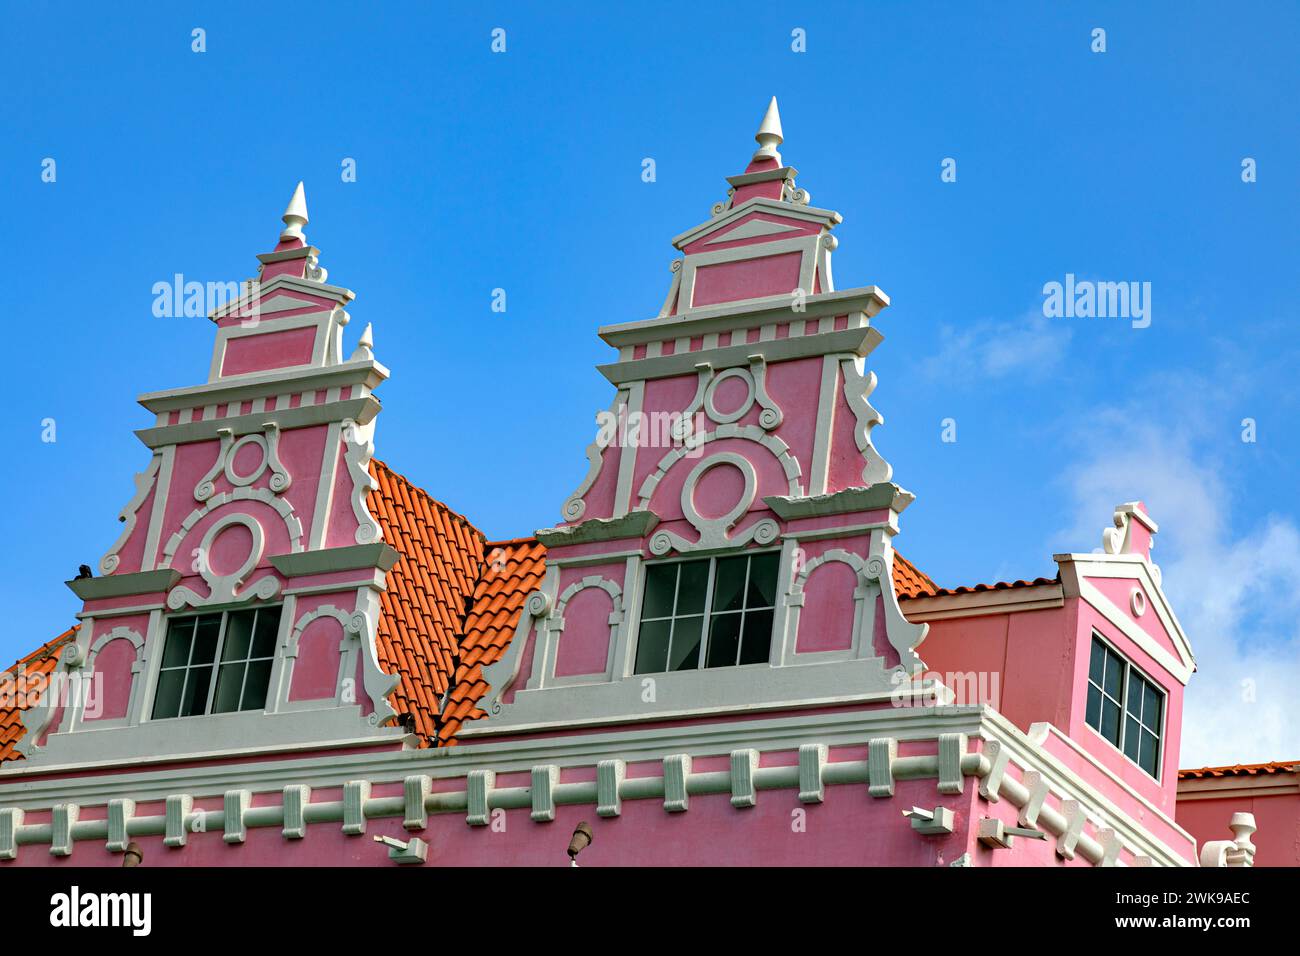 Architektonische Details, Royal Plaza Mall, Oranjestad, Aruba, niederländische Antillen, Karibik Stockfoto